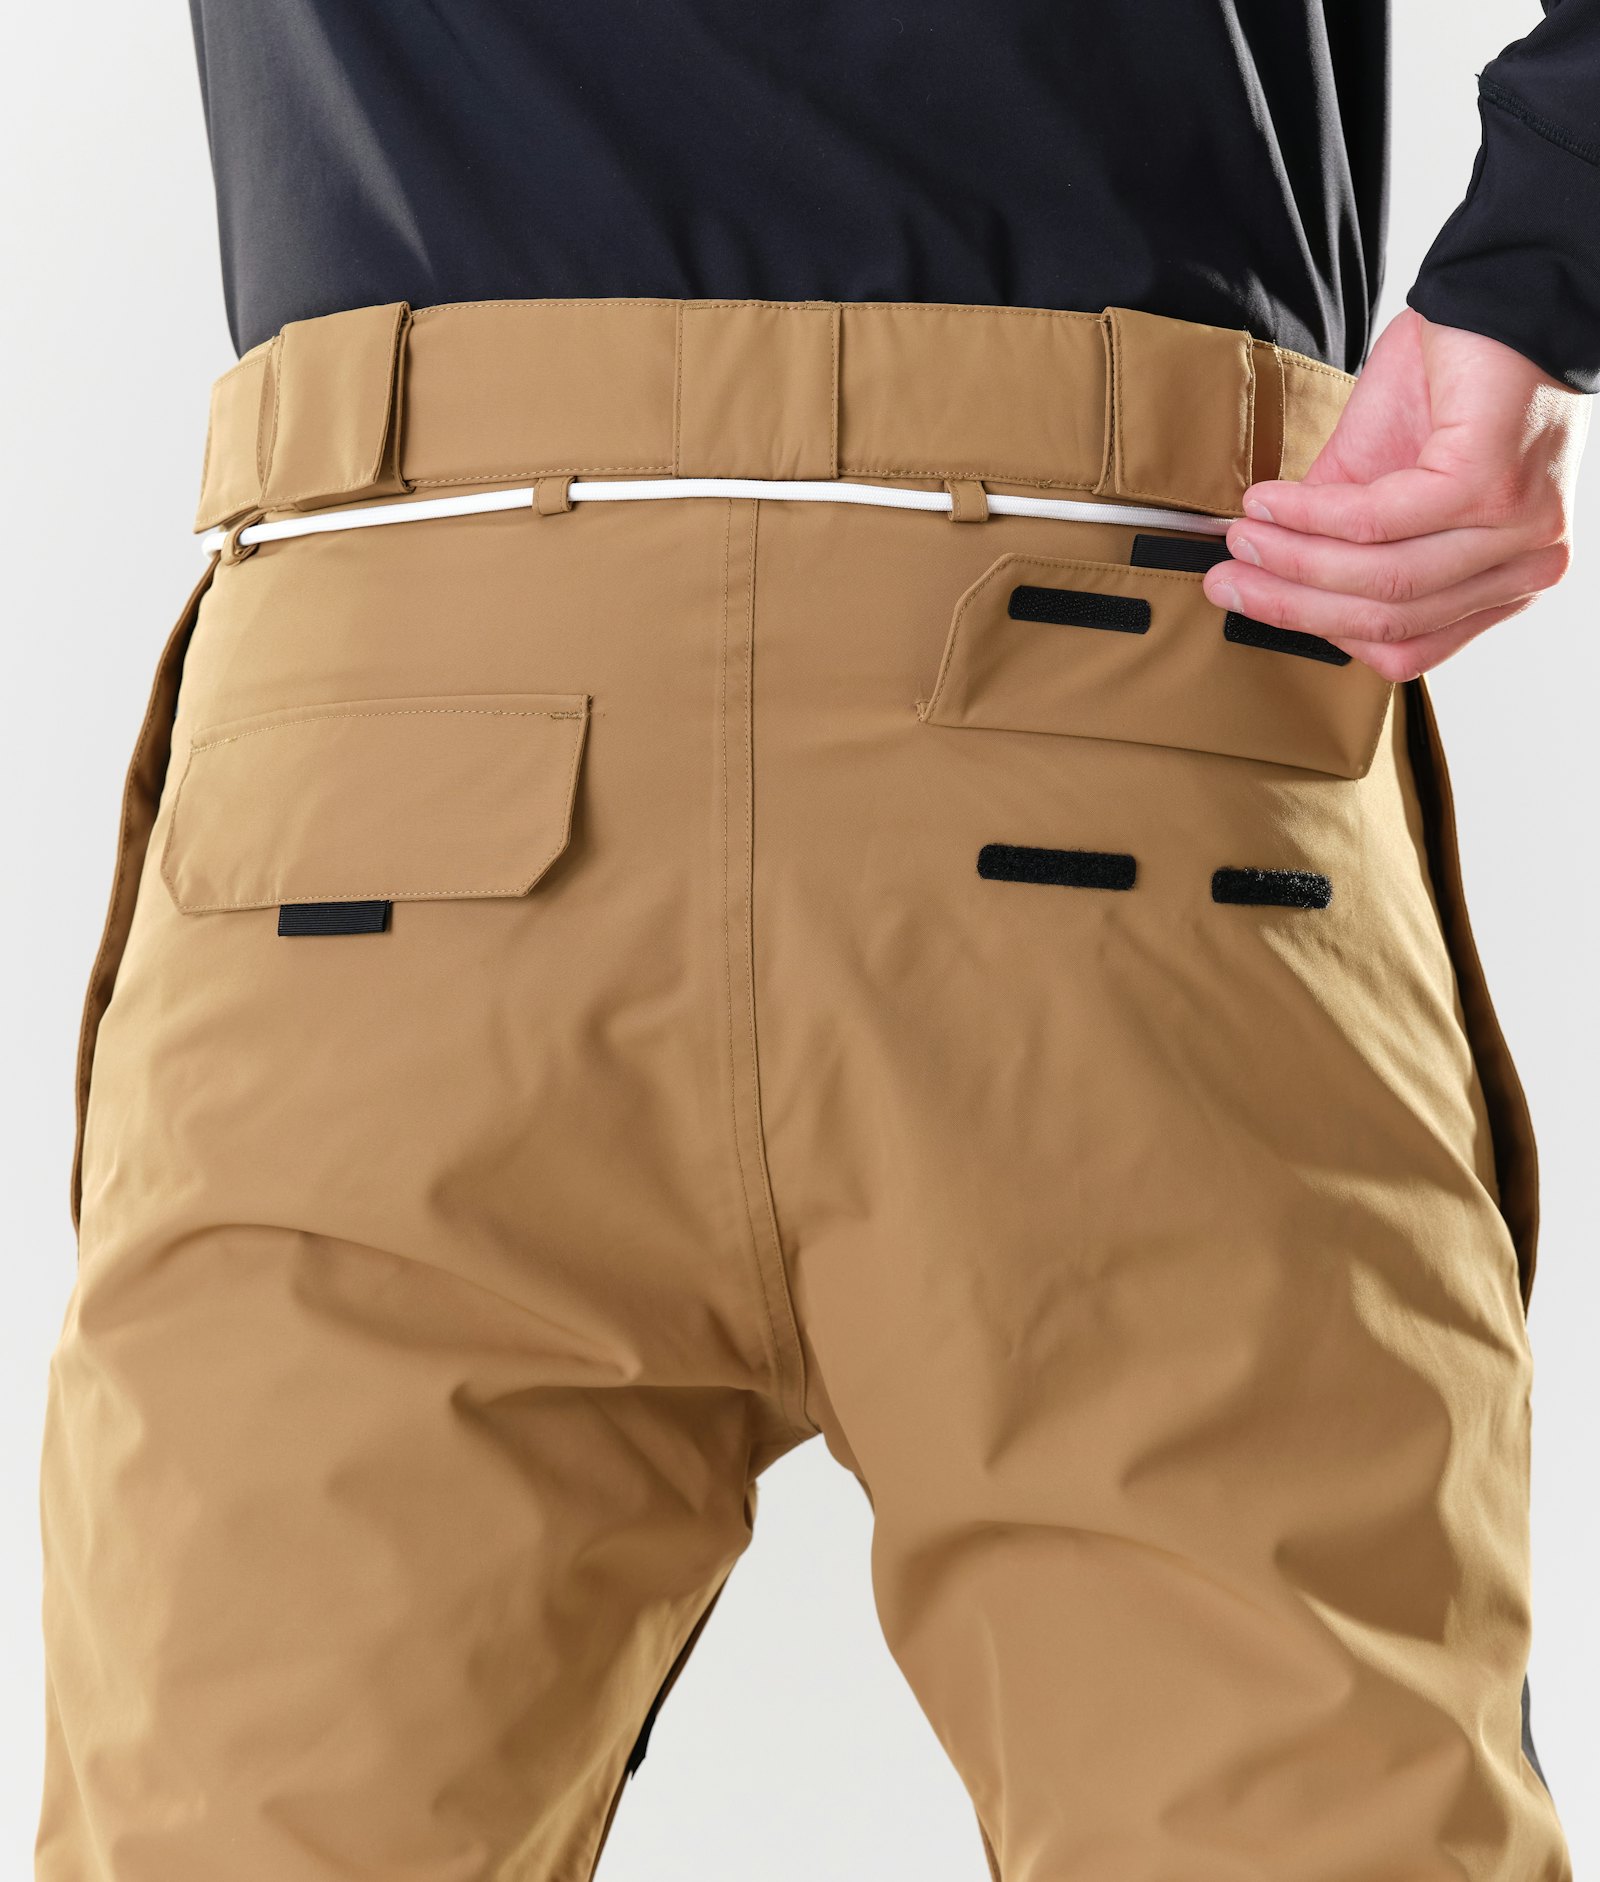 Poise Pantalon de Snowboard Homme Gold/Black